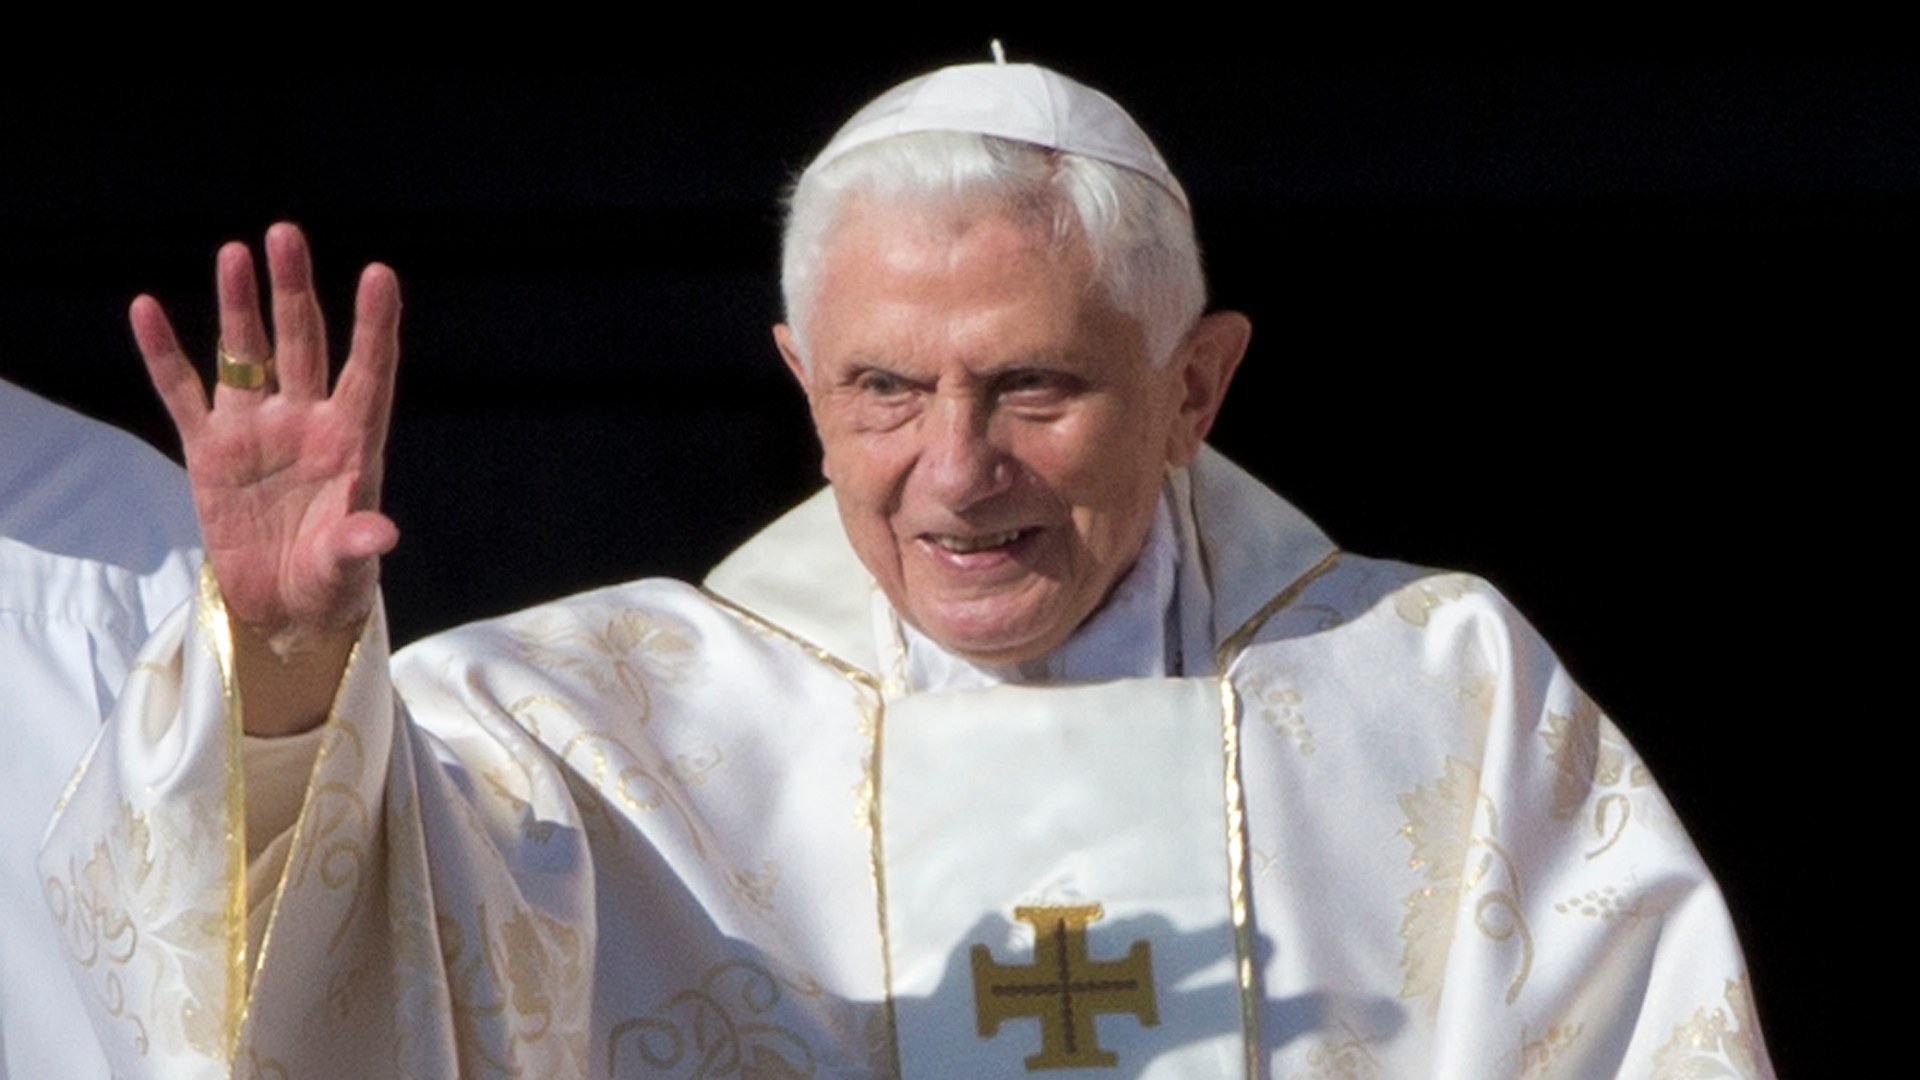 Benedicto arremete contra el matrimonio homosexual y contra lo que llama "el credo del anticristo"